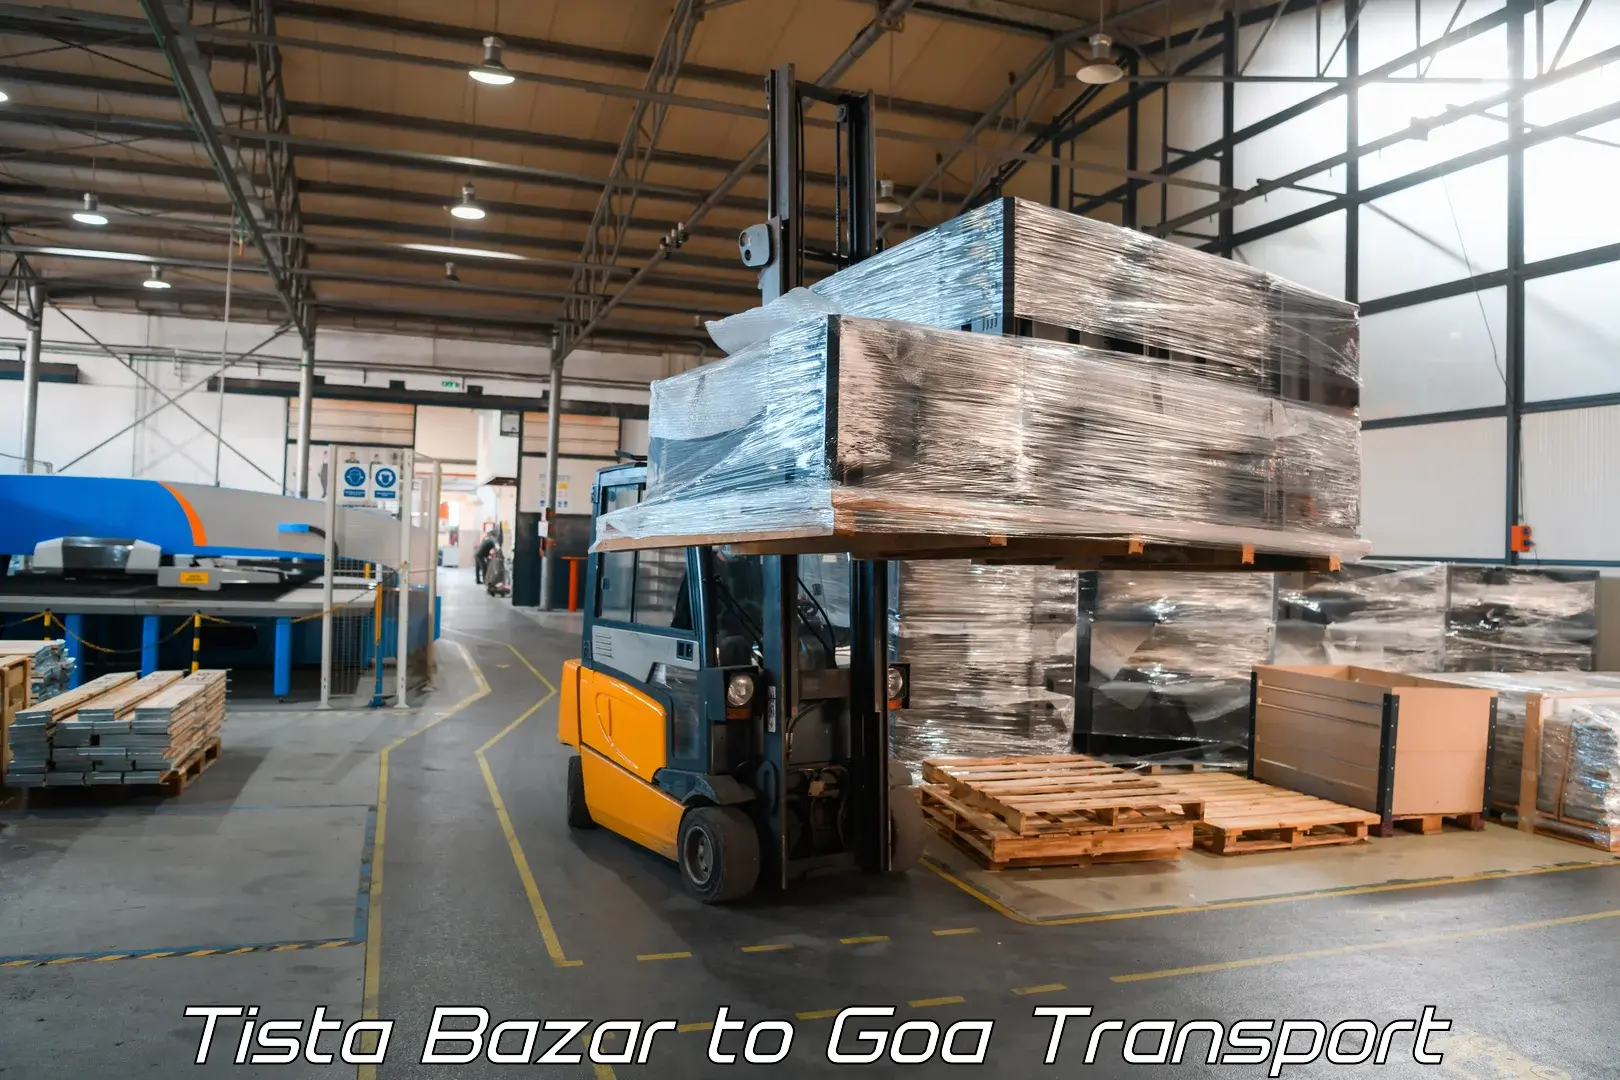 Shipping partner Tista Bazar to South Goa